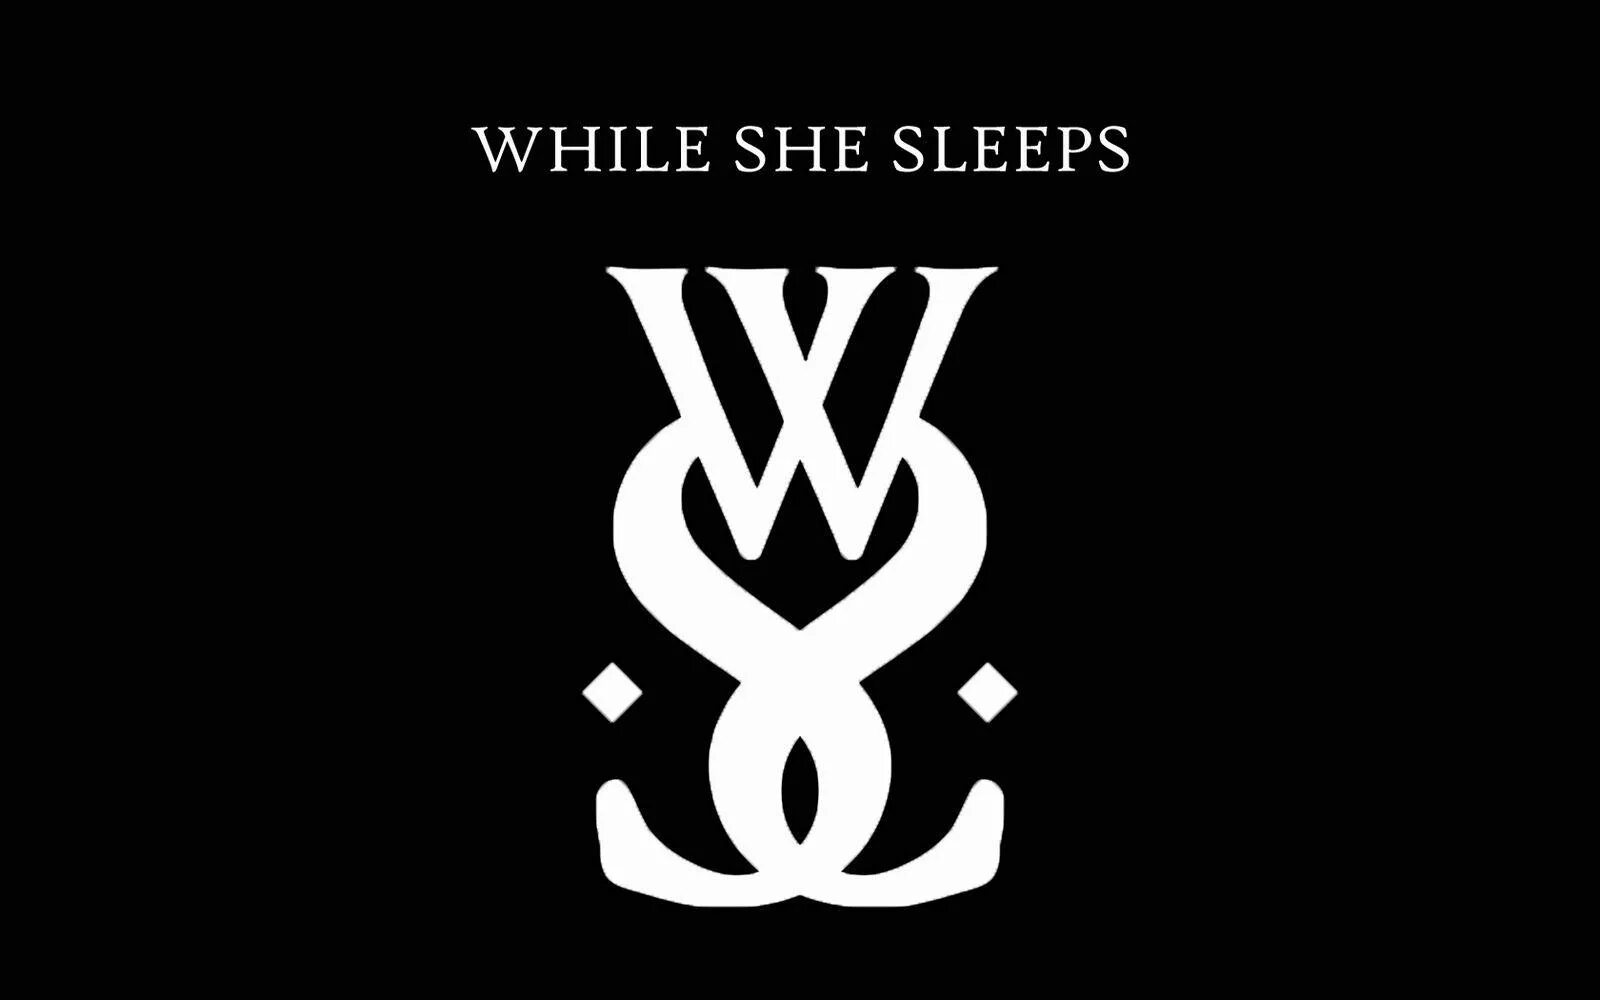 While she sleeps self hell. Группа while she Sleeps. While she Sleeps logo. While she Sleeps лого. While she Sleeps эмблема.